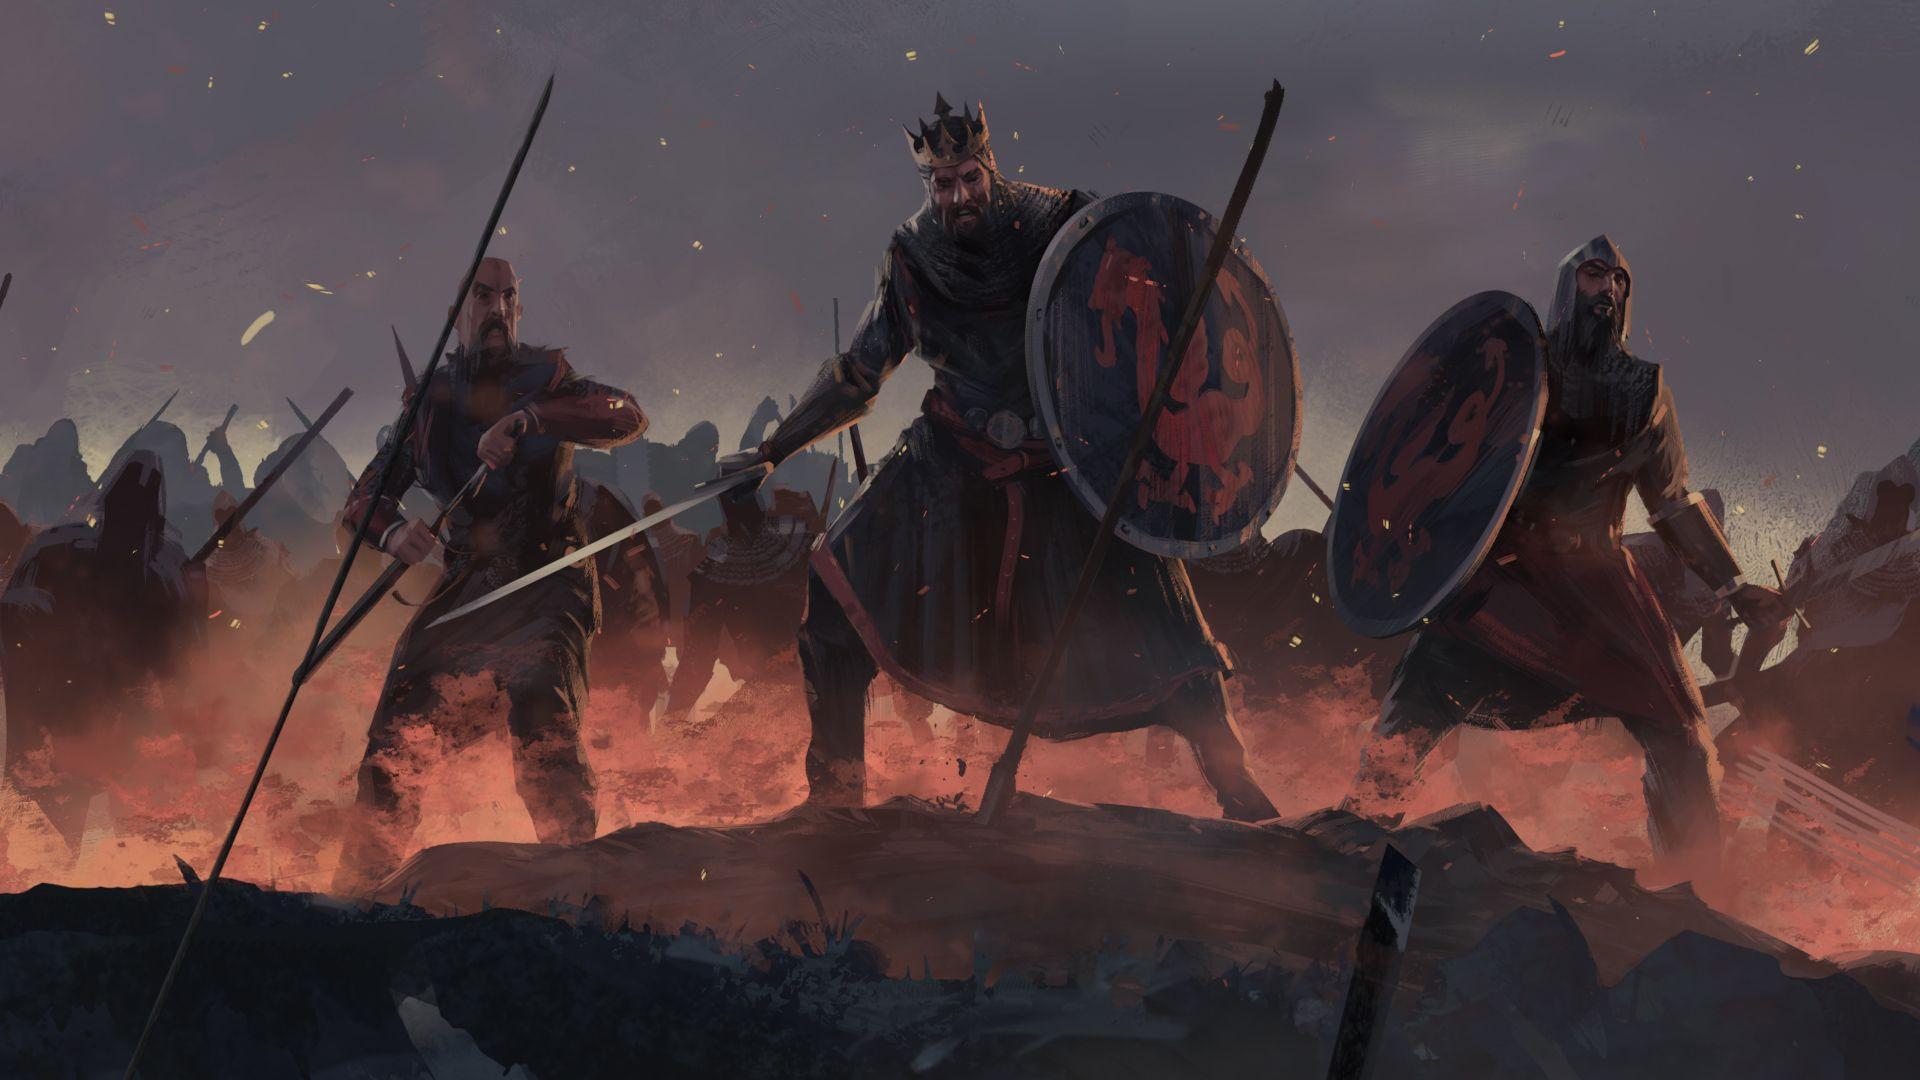 Total War: THREE KINGDOMS Wallpapers